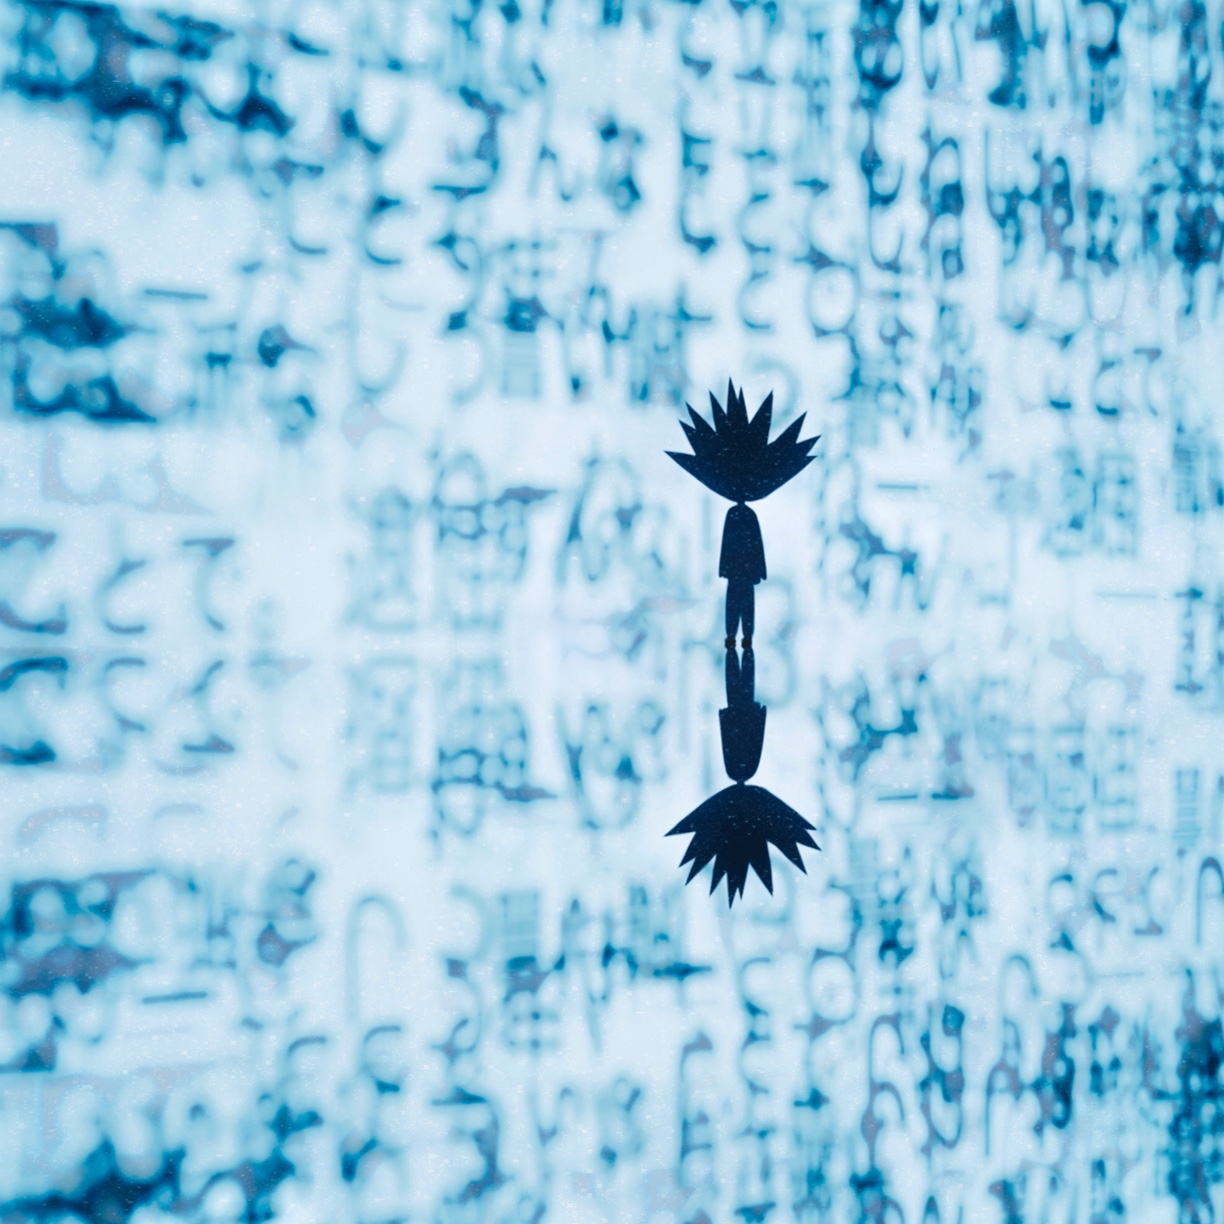 Atsushigraphのデジタルアート作品「Blur Effect」の画像です。